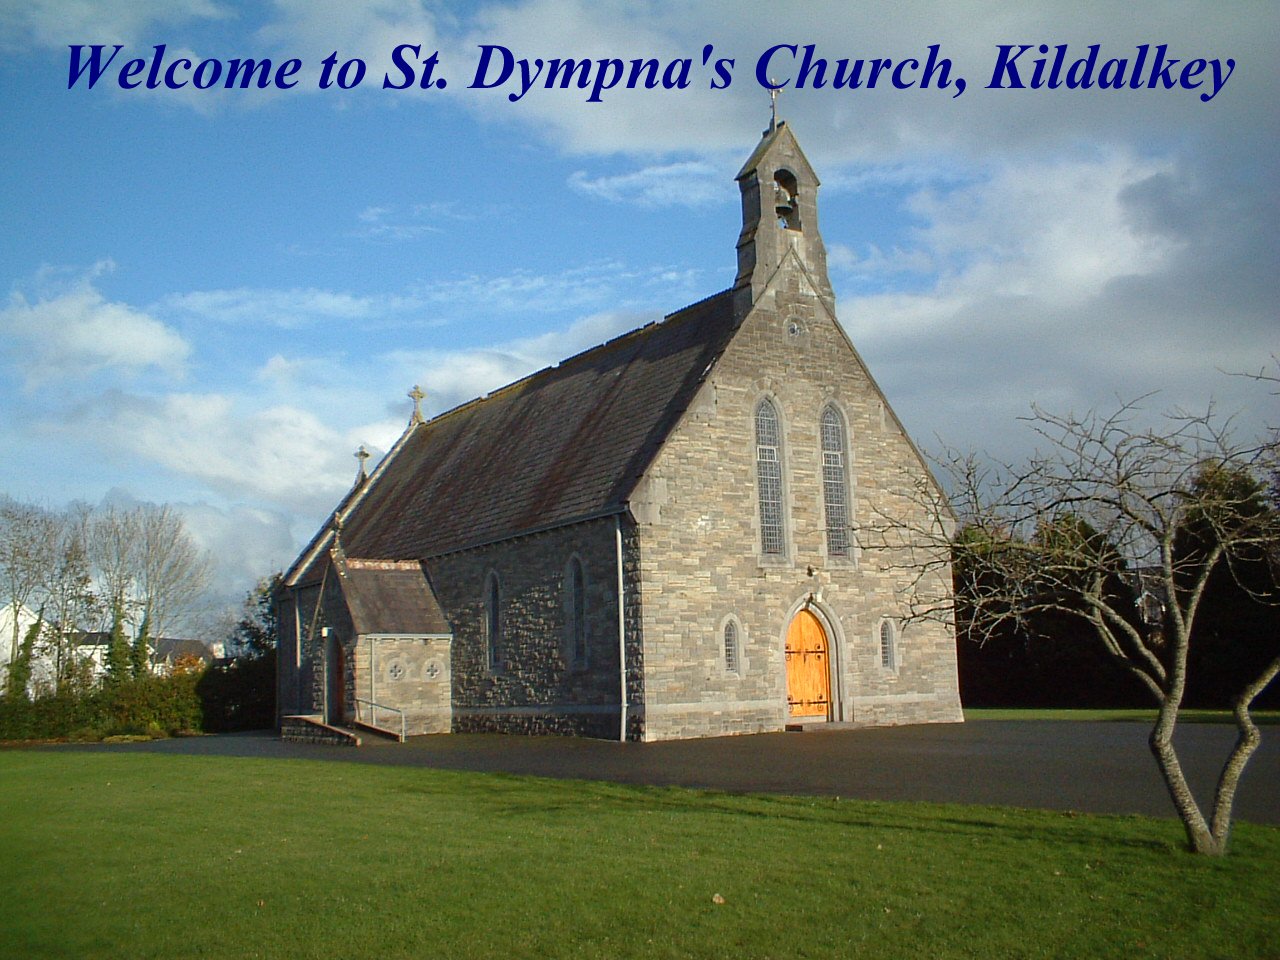 St. Dympna's Church Kildalkey